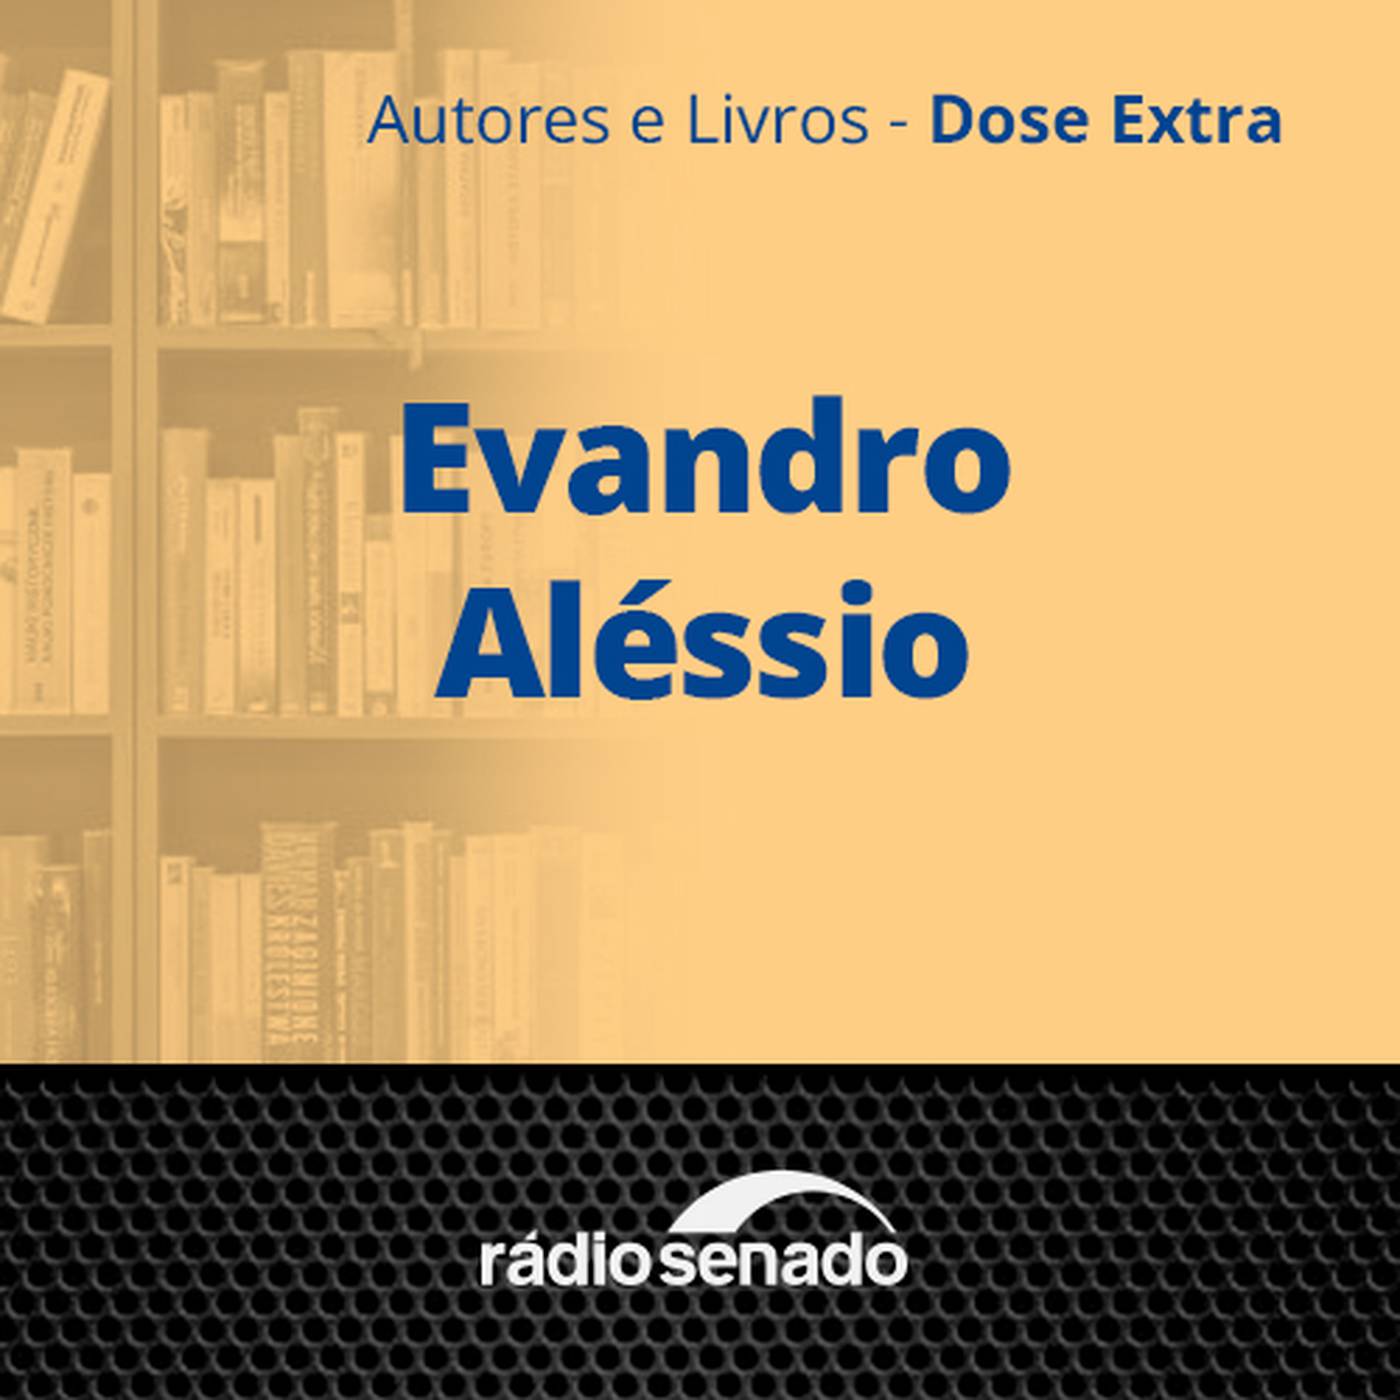 Evandro Aléssio - 1ª parte